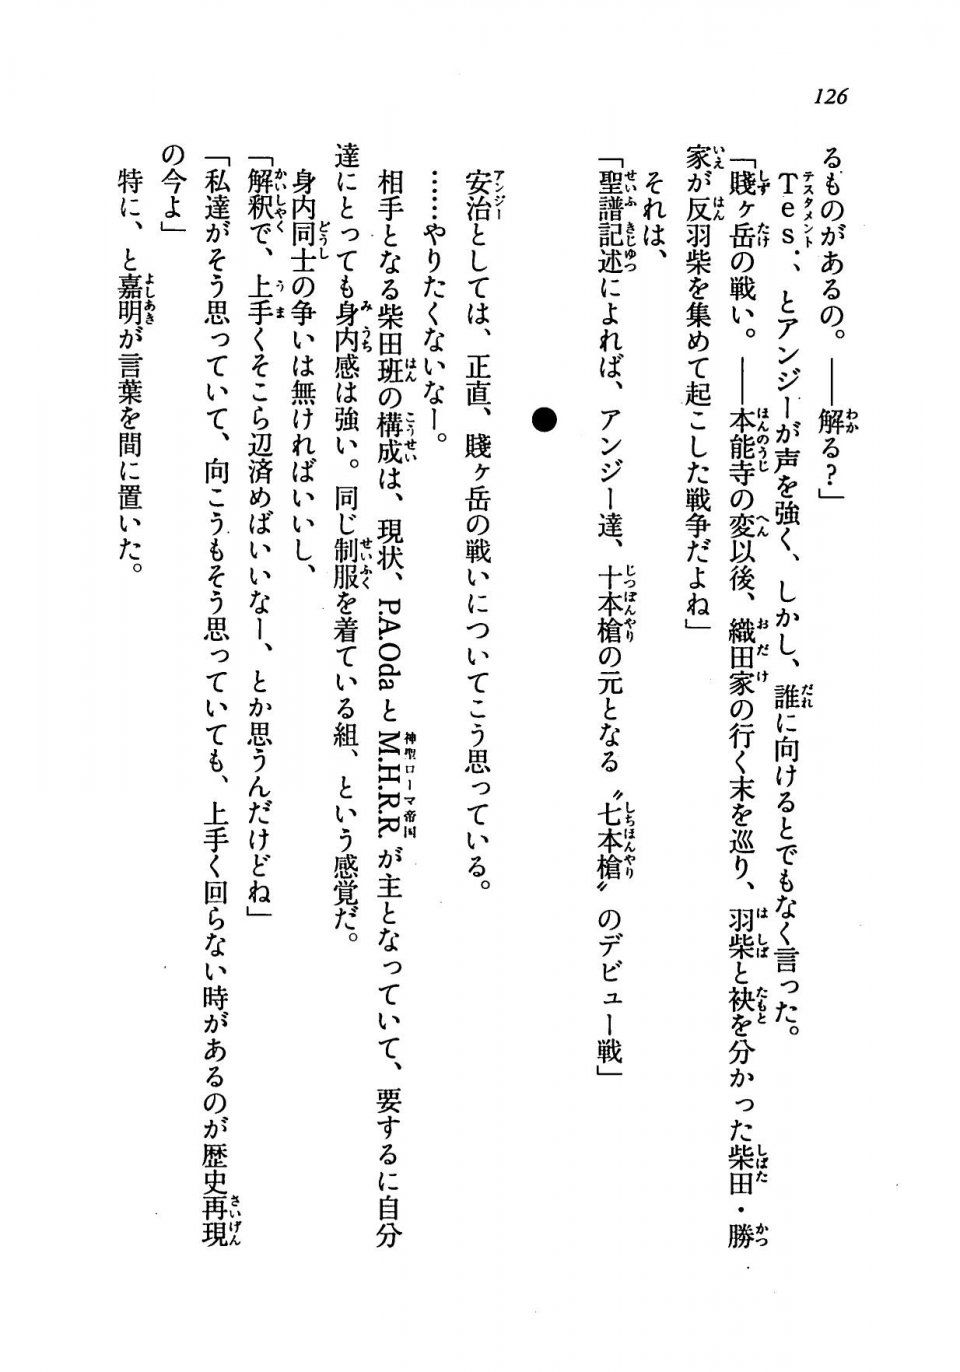 Kyoukai Senjou no Horizon LN Vol 19(8A) - Photo #126